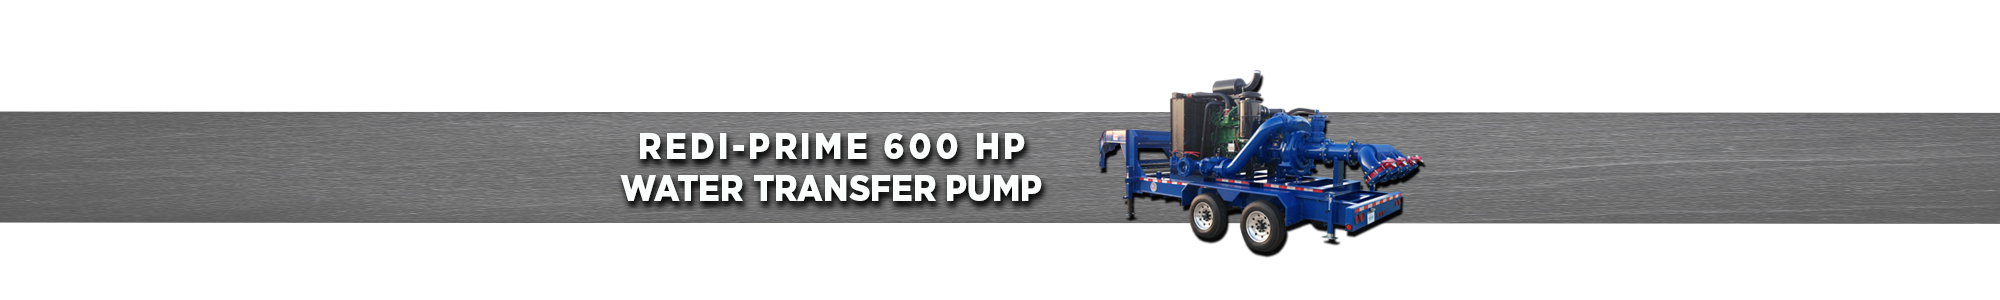 Redi-Prime 600 HP Water Transfer Pump